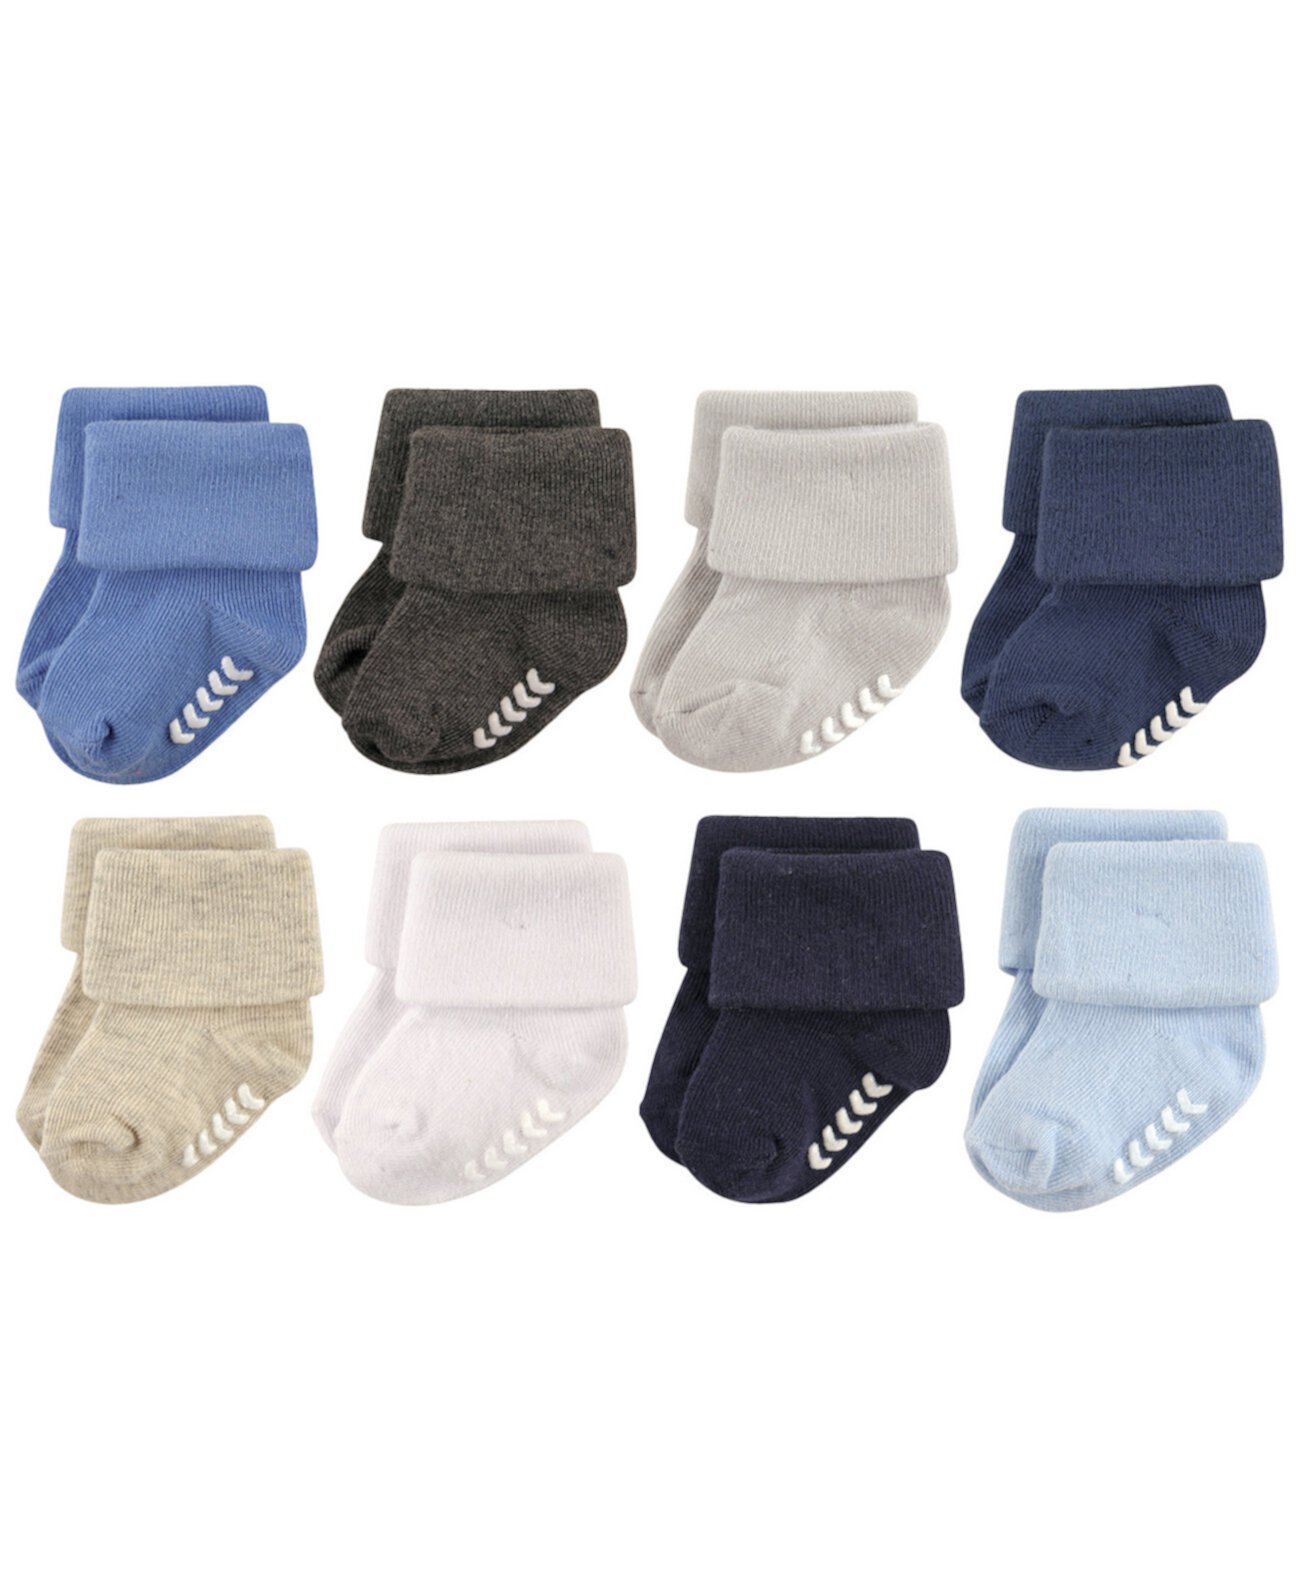 Нескользящие манжетные носки, 8 шт., 0-24 месяца Hudson Baby